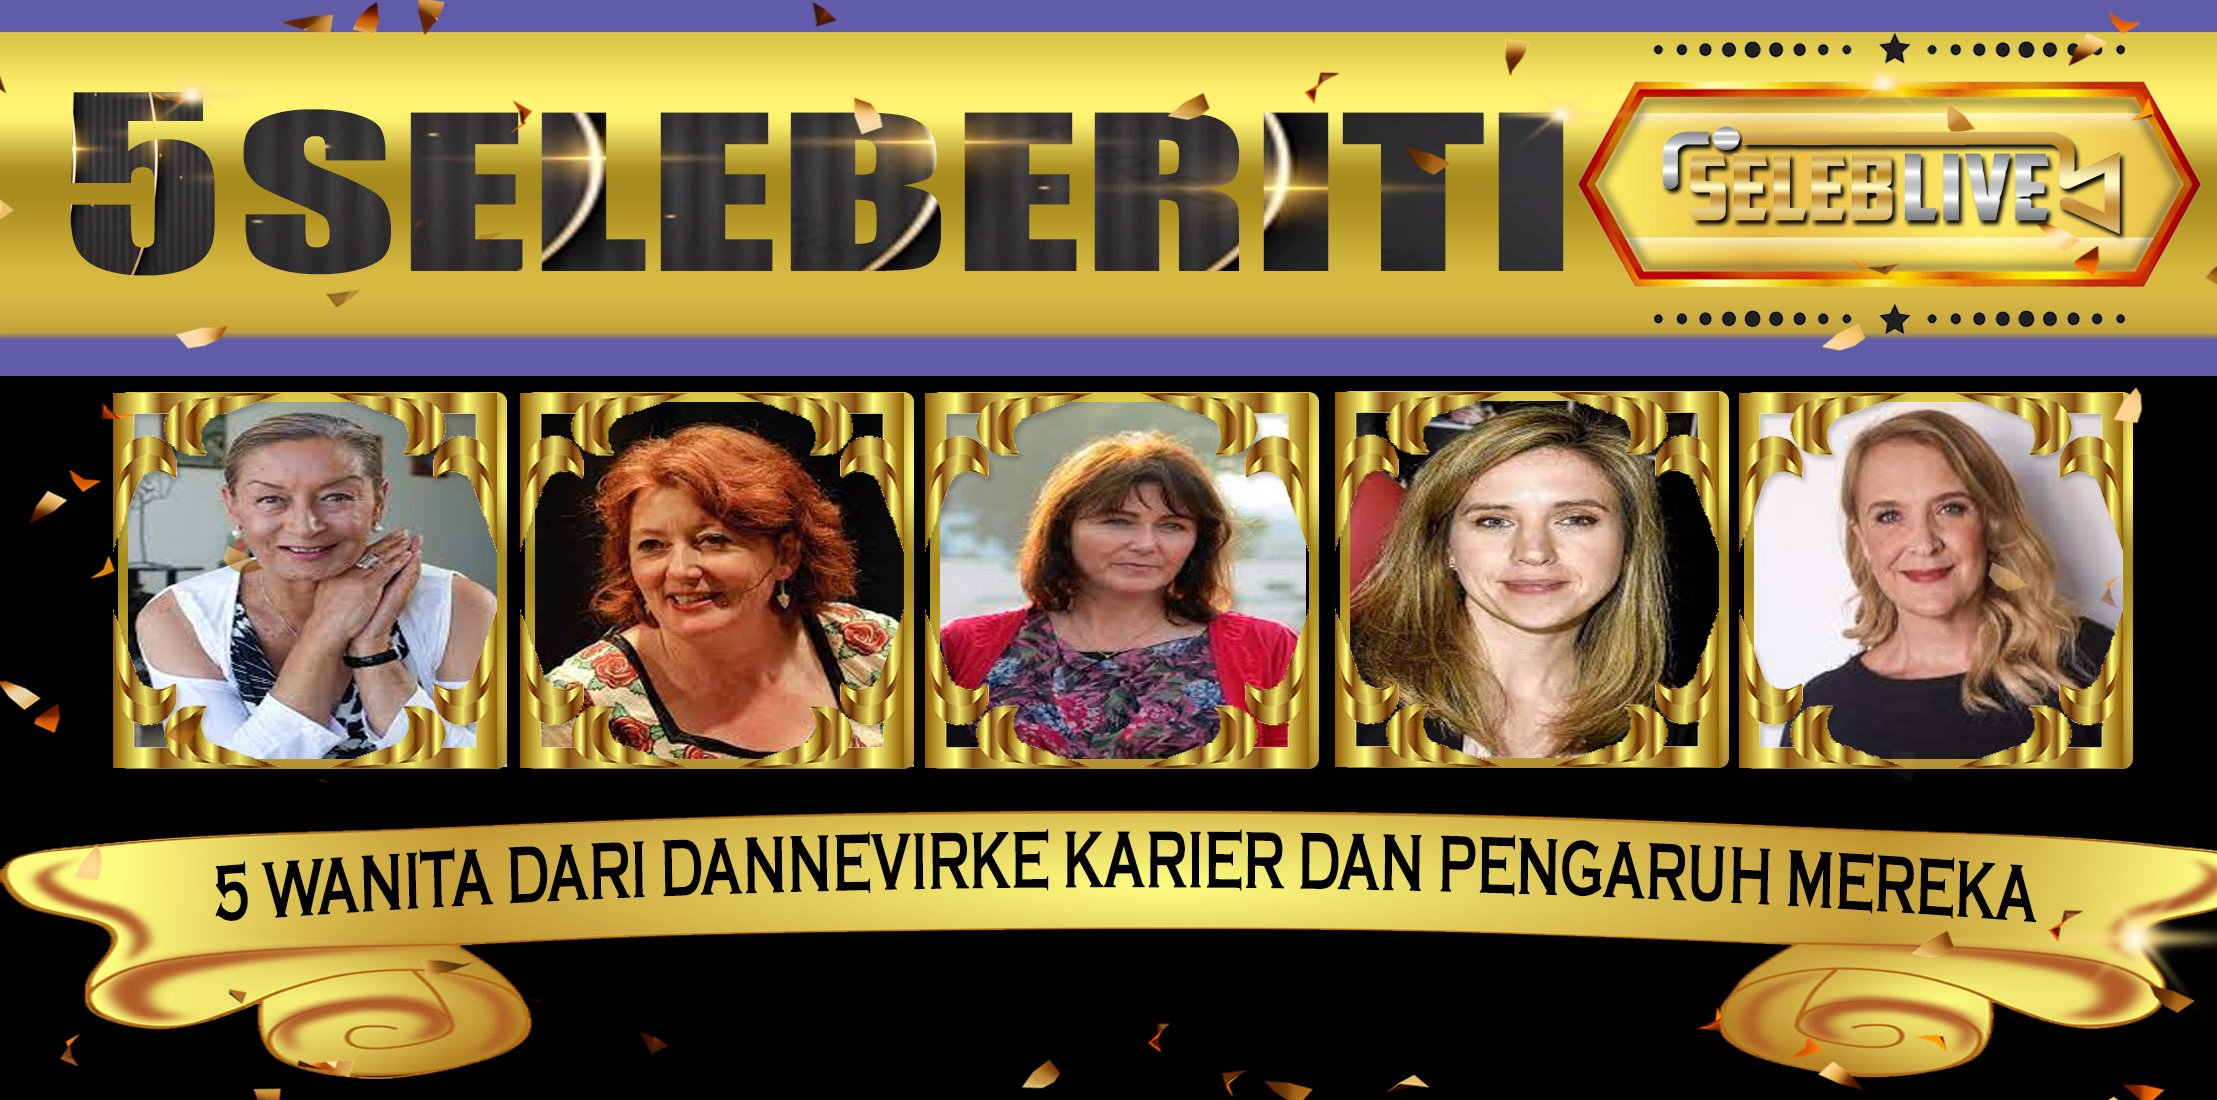 5 Wanita dari Dannevirke